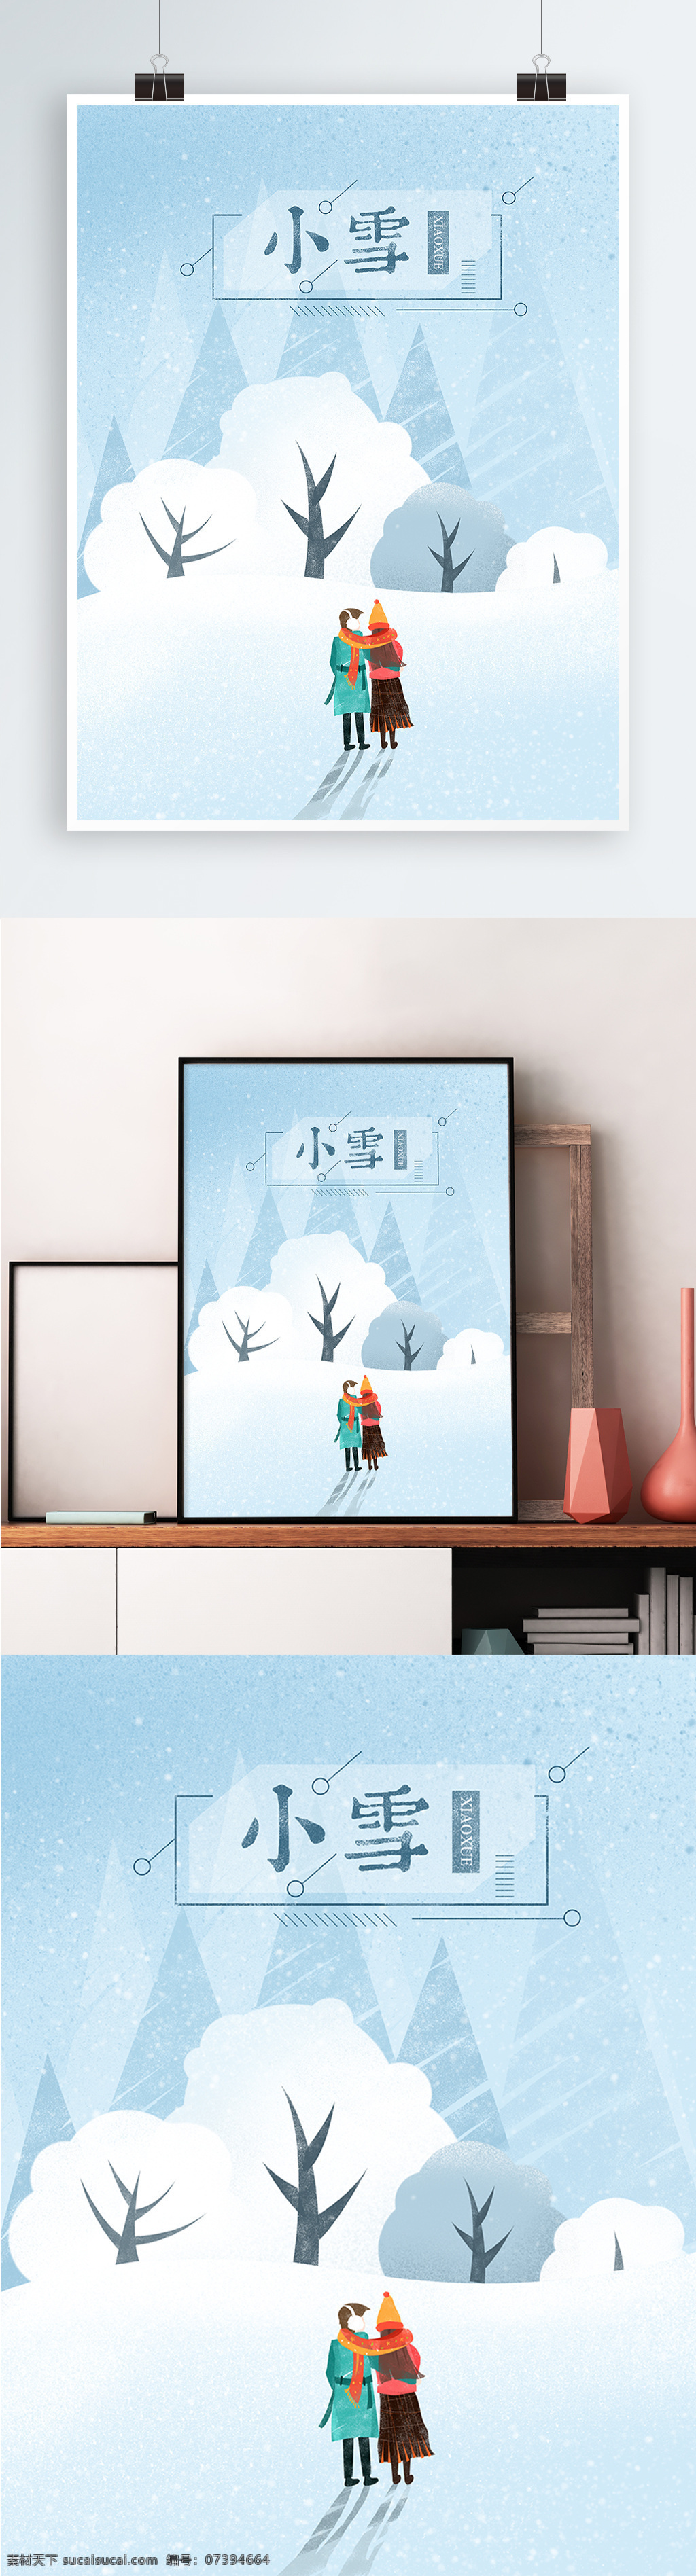 小雪 节气 情侣 清新 唯美 树林 雪地 手绘 插画 海报 传统 意境 简约 大气 温暖 治愈 雪花